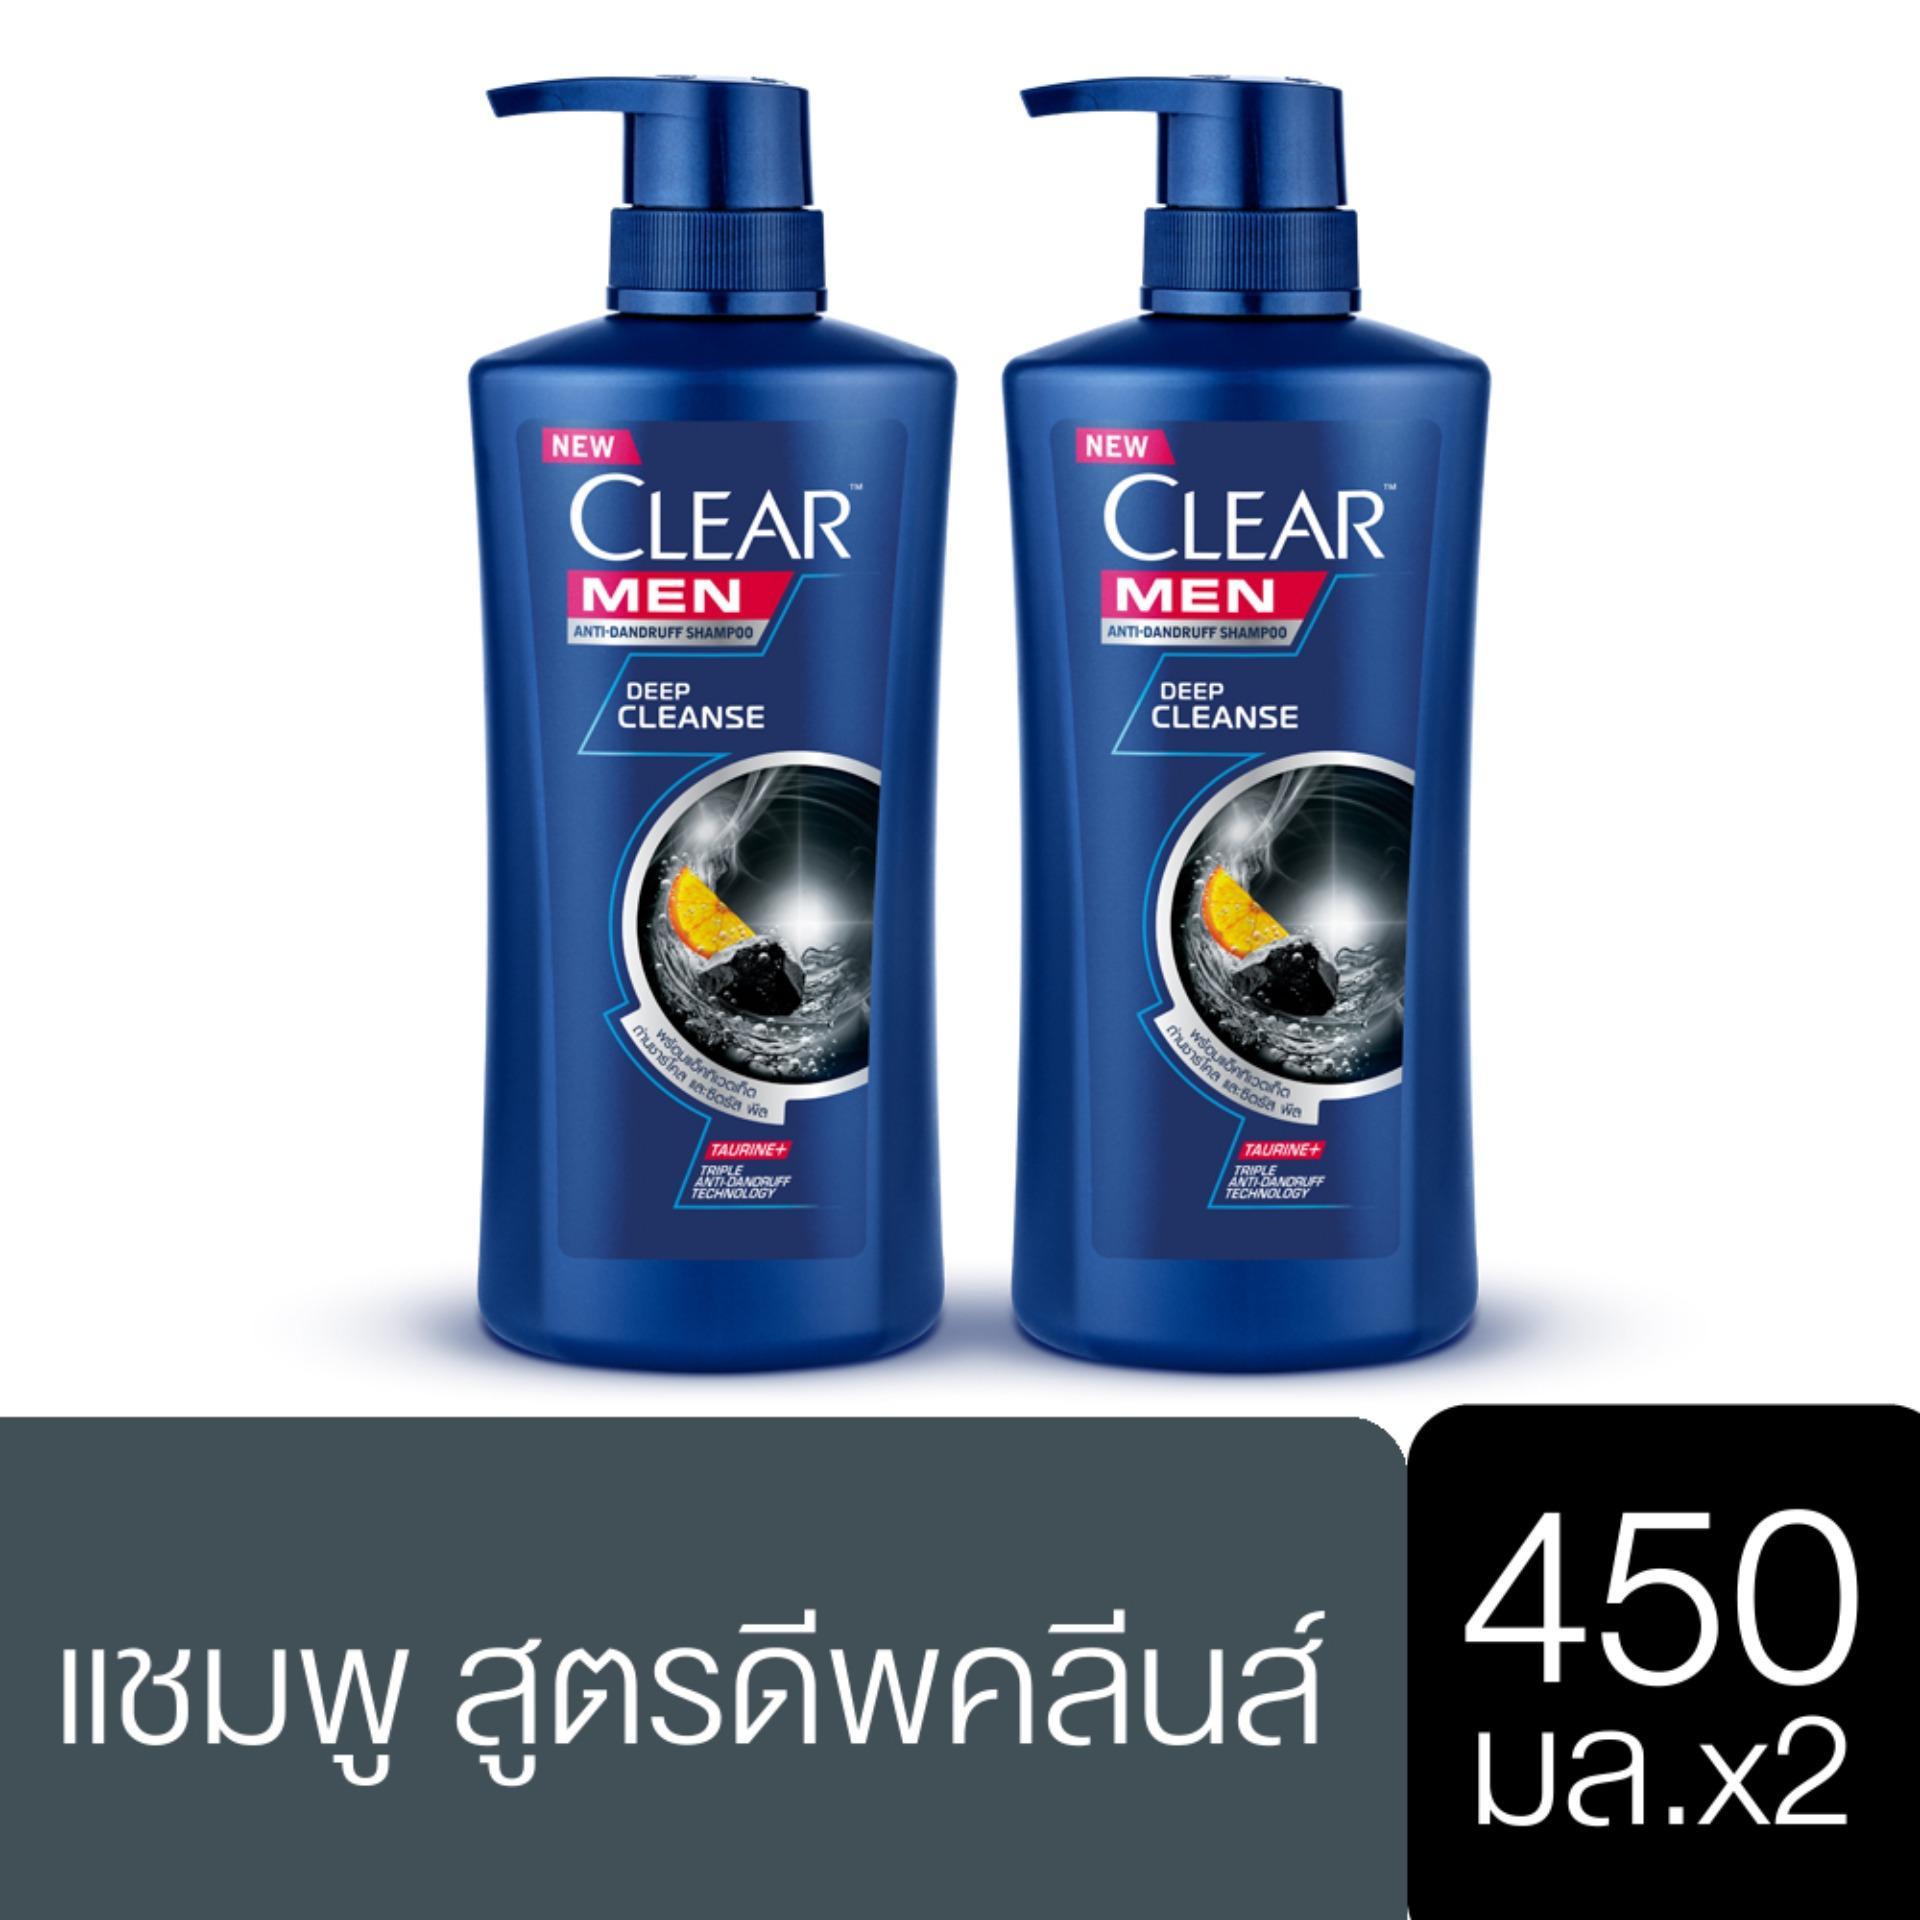 มุมมองเพิ่มเติมของสินค้า เคลียร์ เมน ดีพคลีน แชมพูขจัดรังแค สีเงิน สำหรับผู้ชาย สะอาดล้ำลึก 450 มล. x2 Clear MEN Deep Clean Anti dandruff Shampoo Silver 450 ml. x2( ยาสระผม ครีมสระผม แชมพู shampoo ) ของแท้